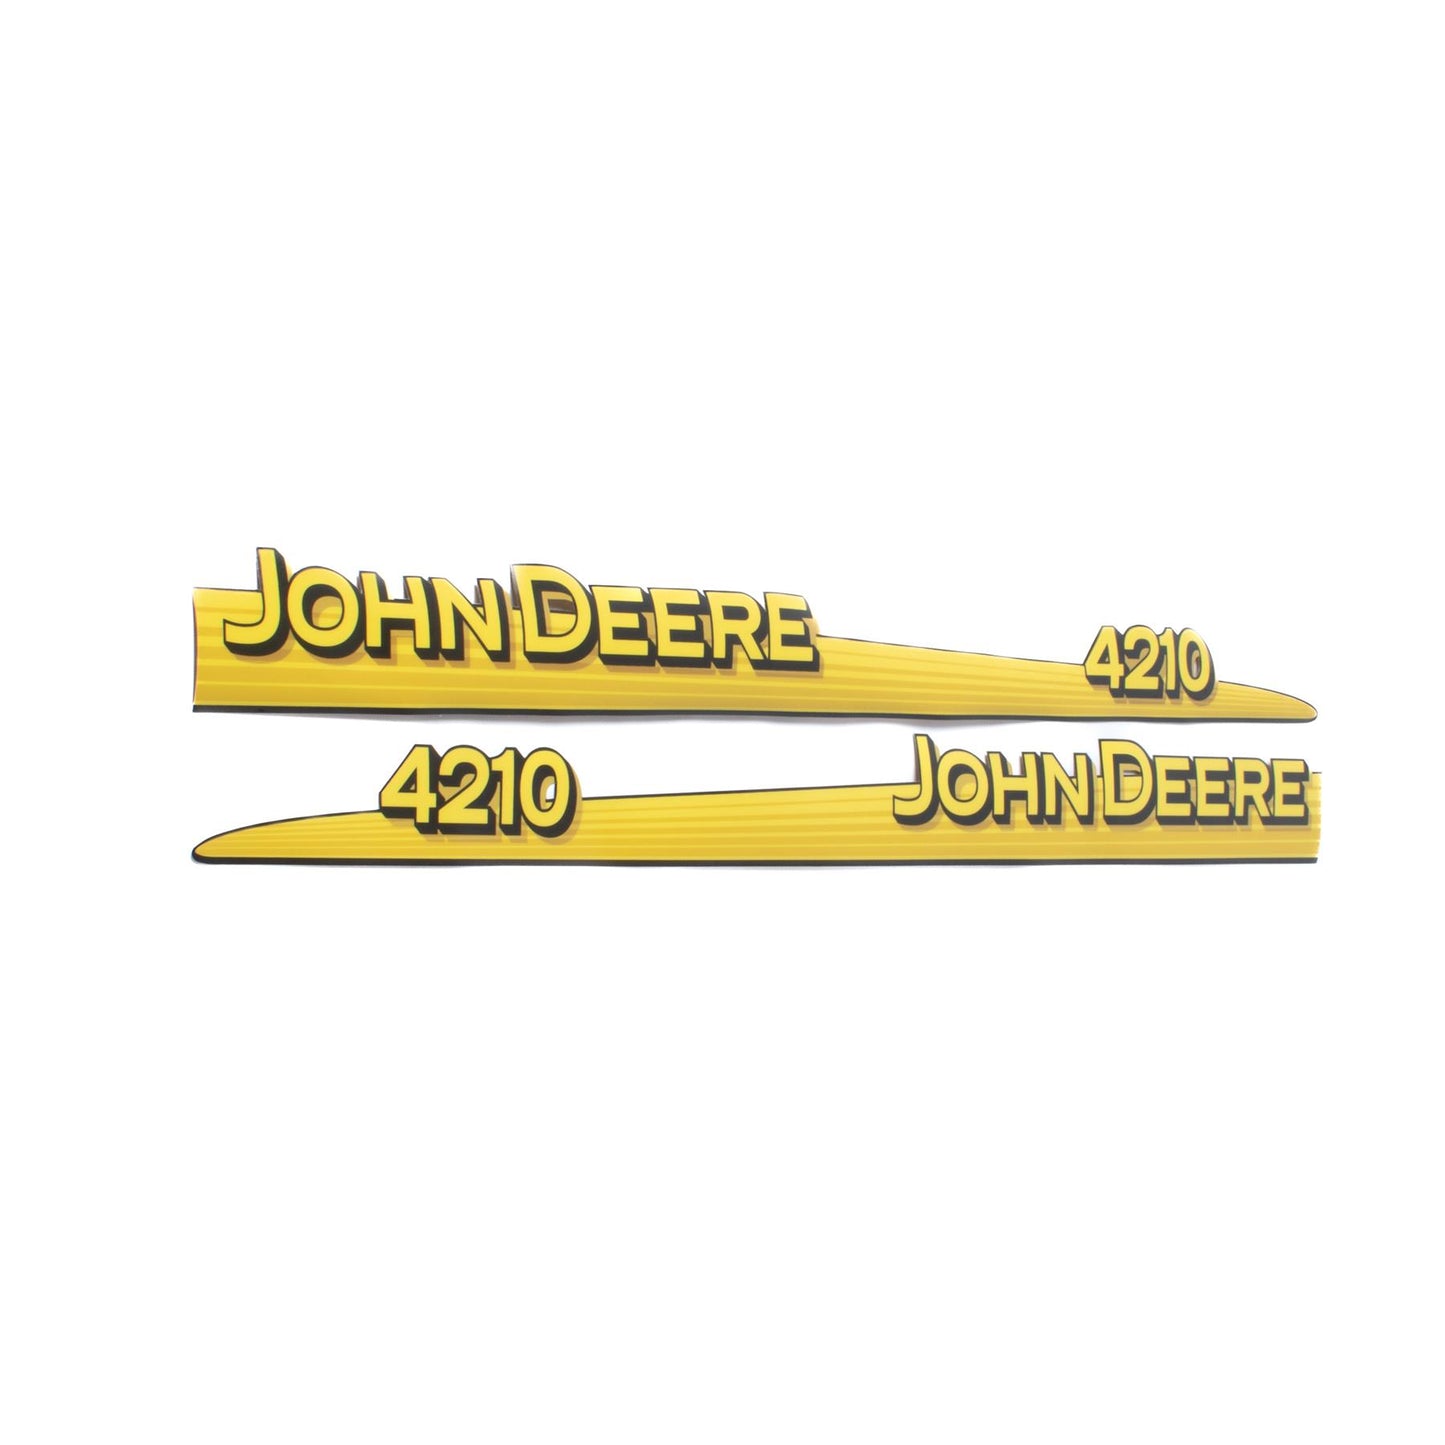 John Deere Decal - 4210 - Both Sides - LVU12281 LVU12282